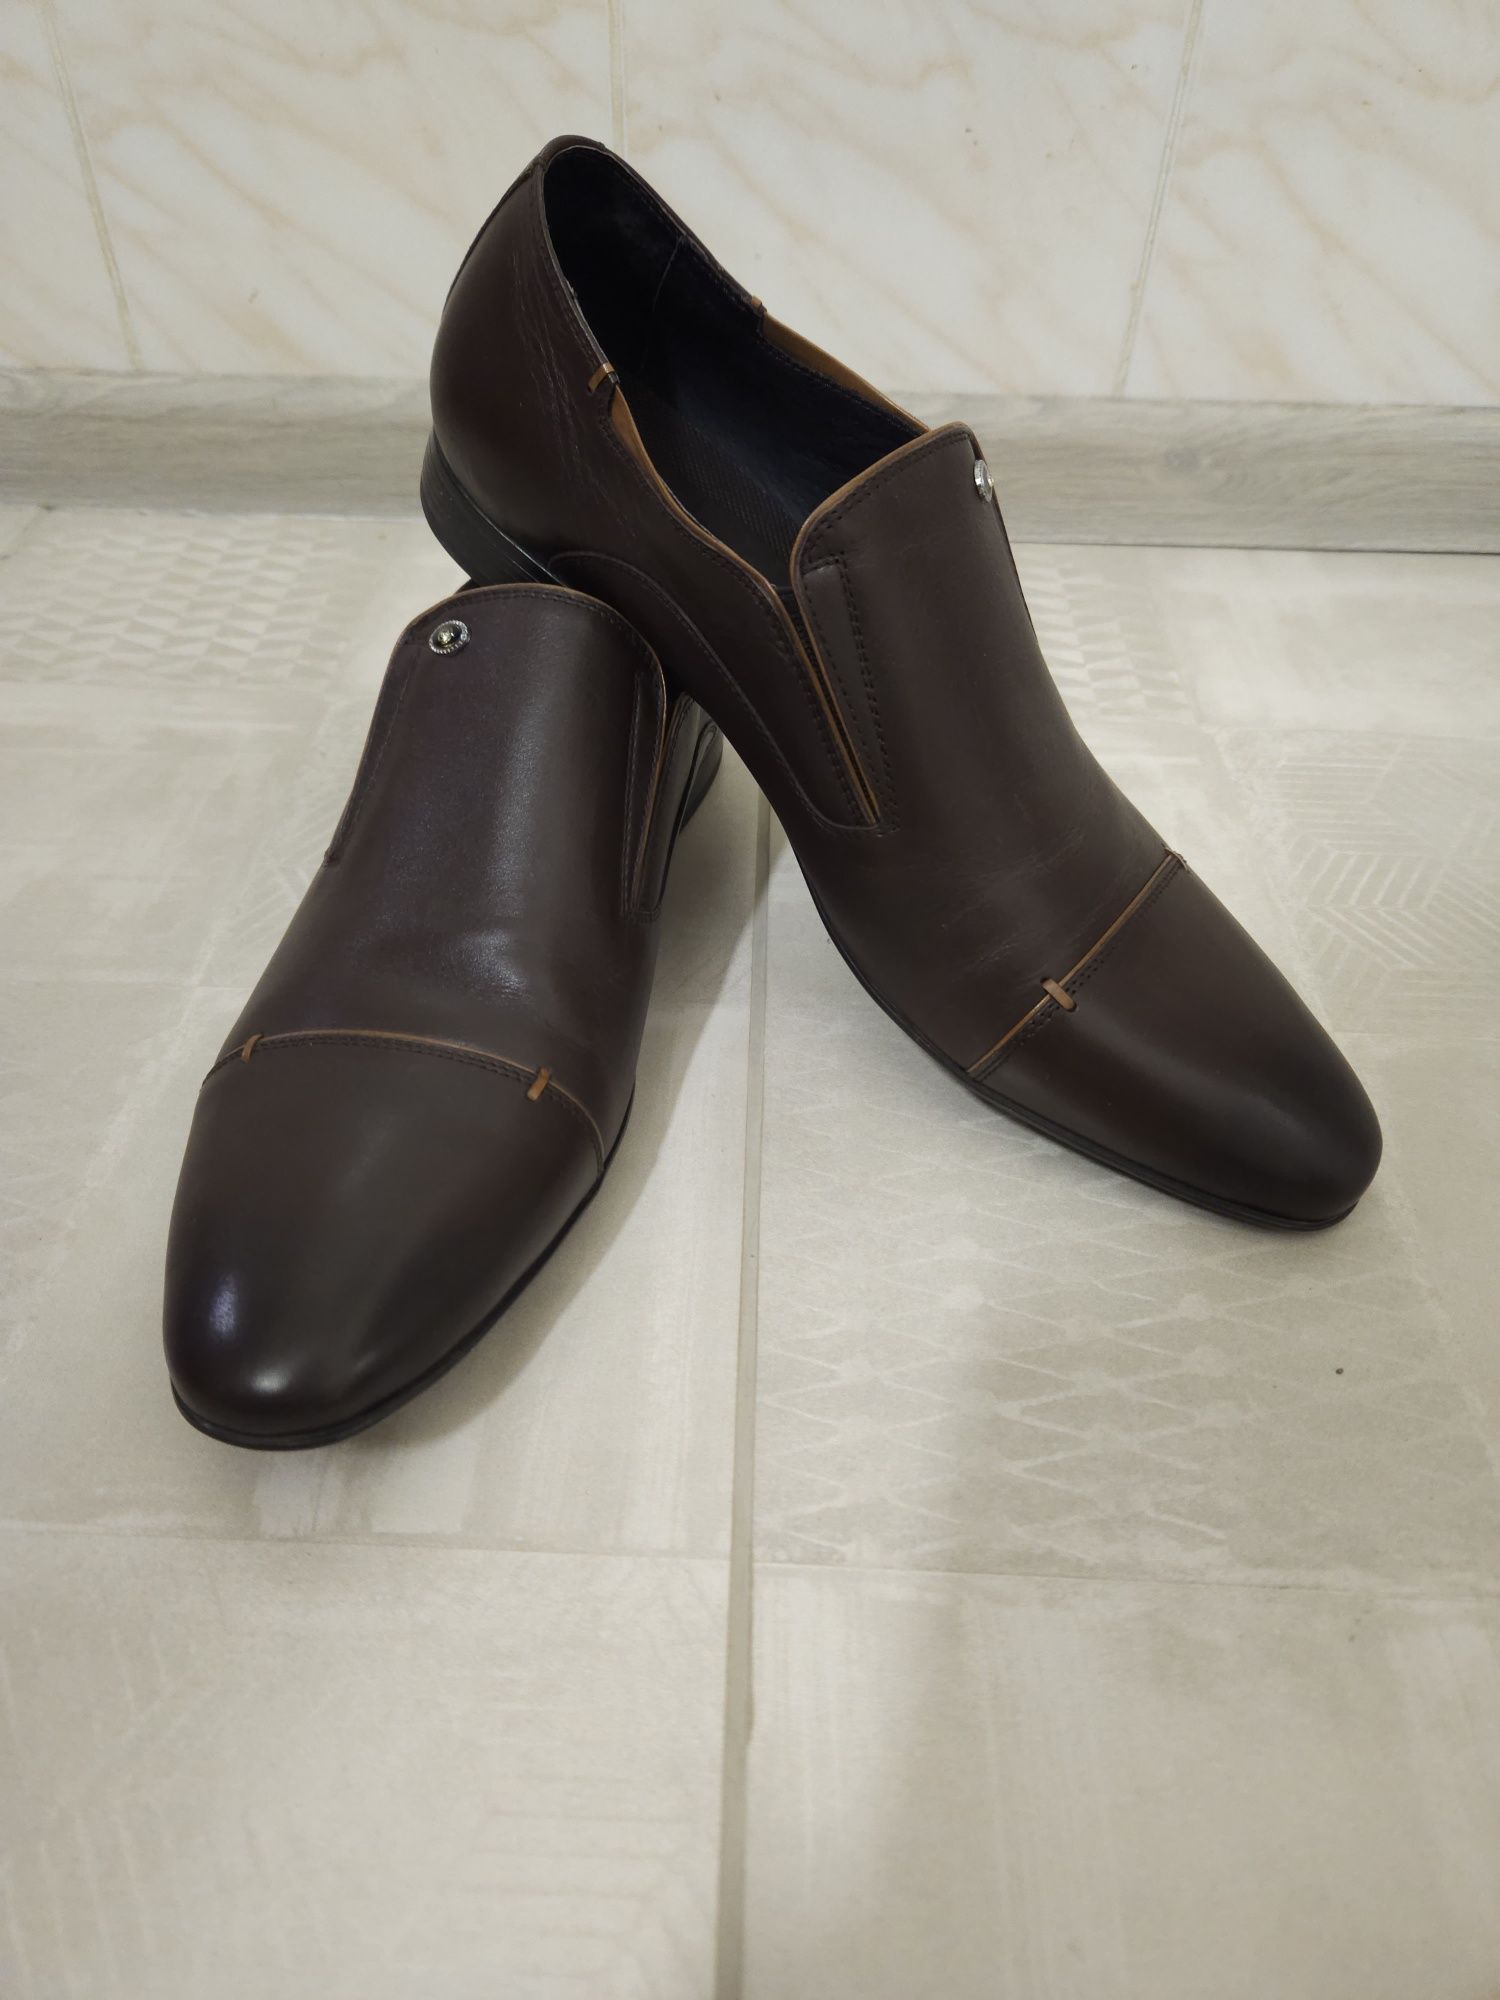 Мужские туфли, коричневые, НОВЫЕ, 44 размер, 29,5-30 см